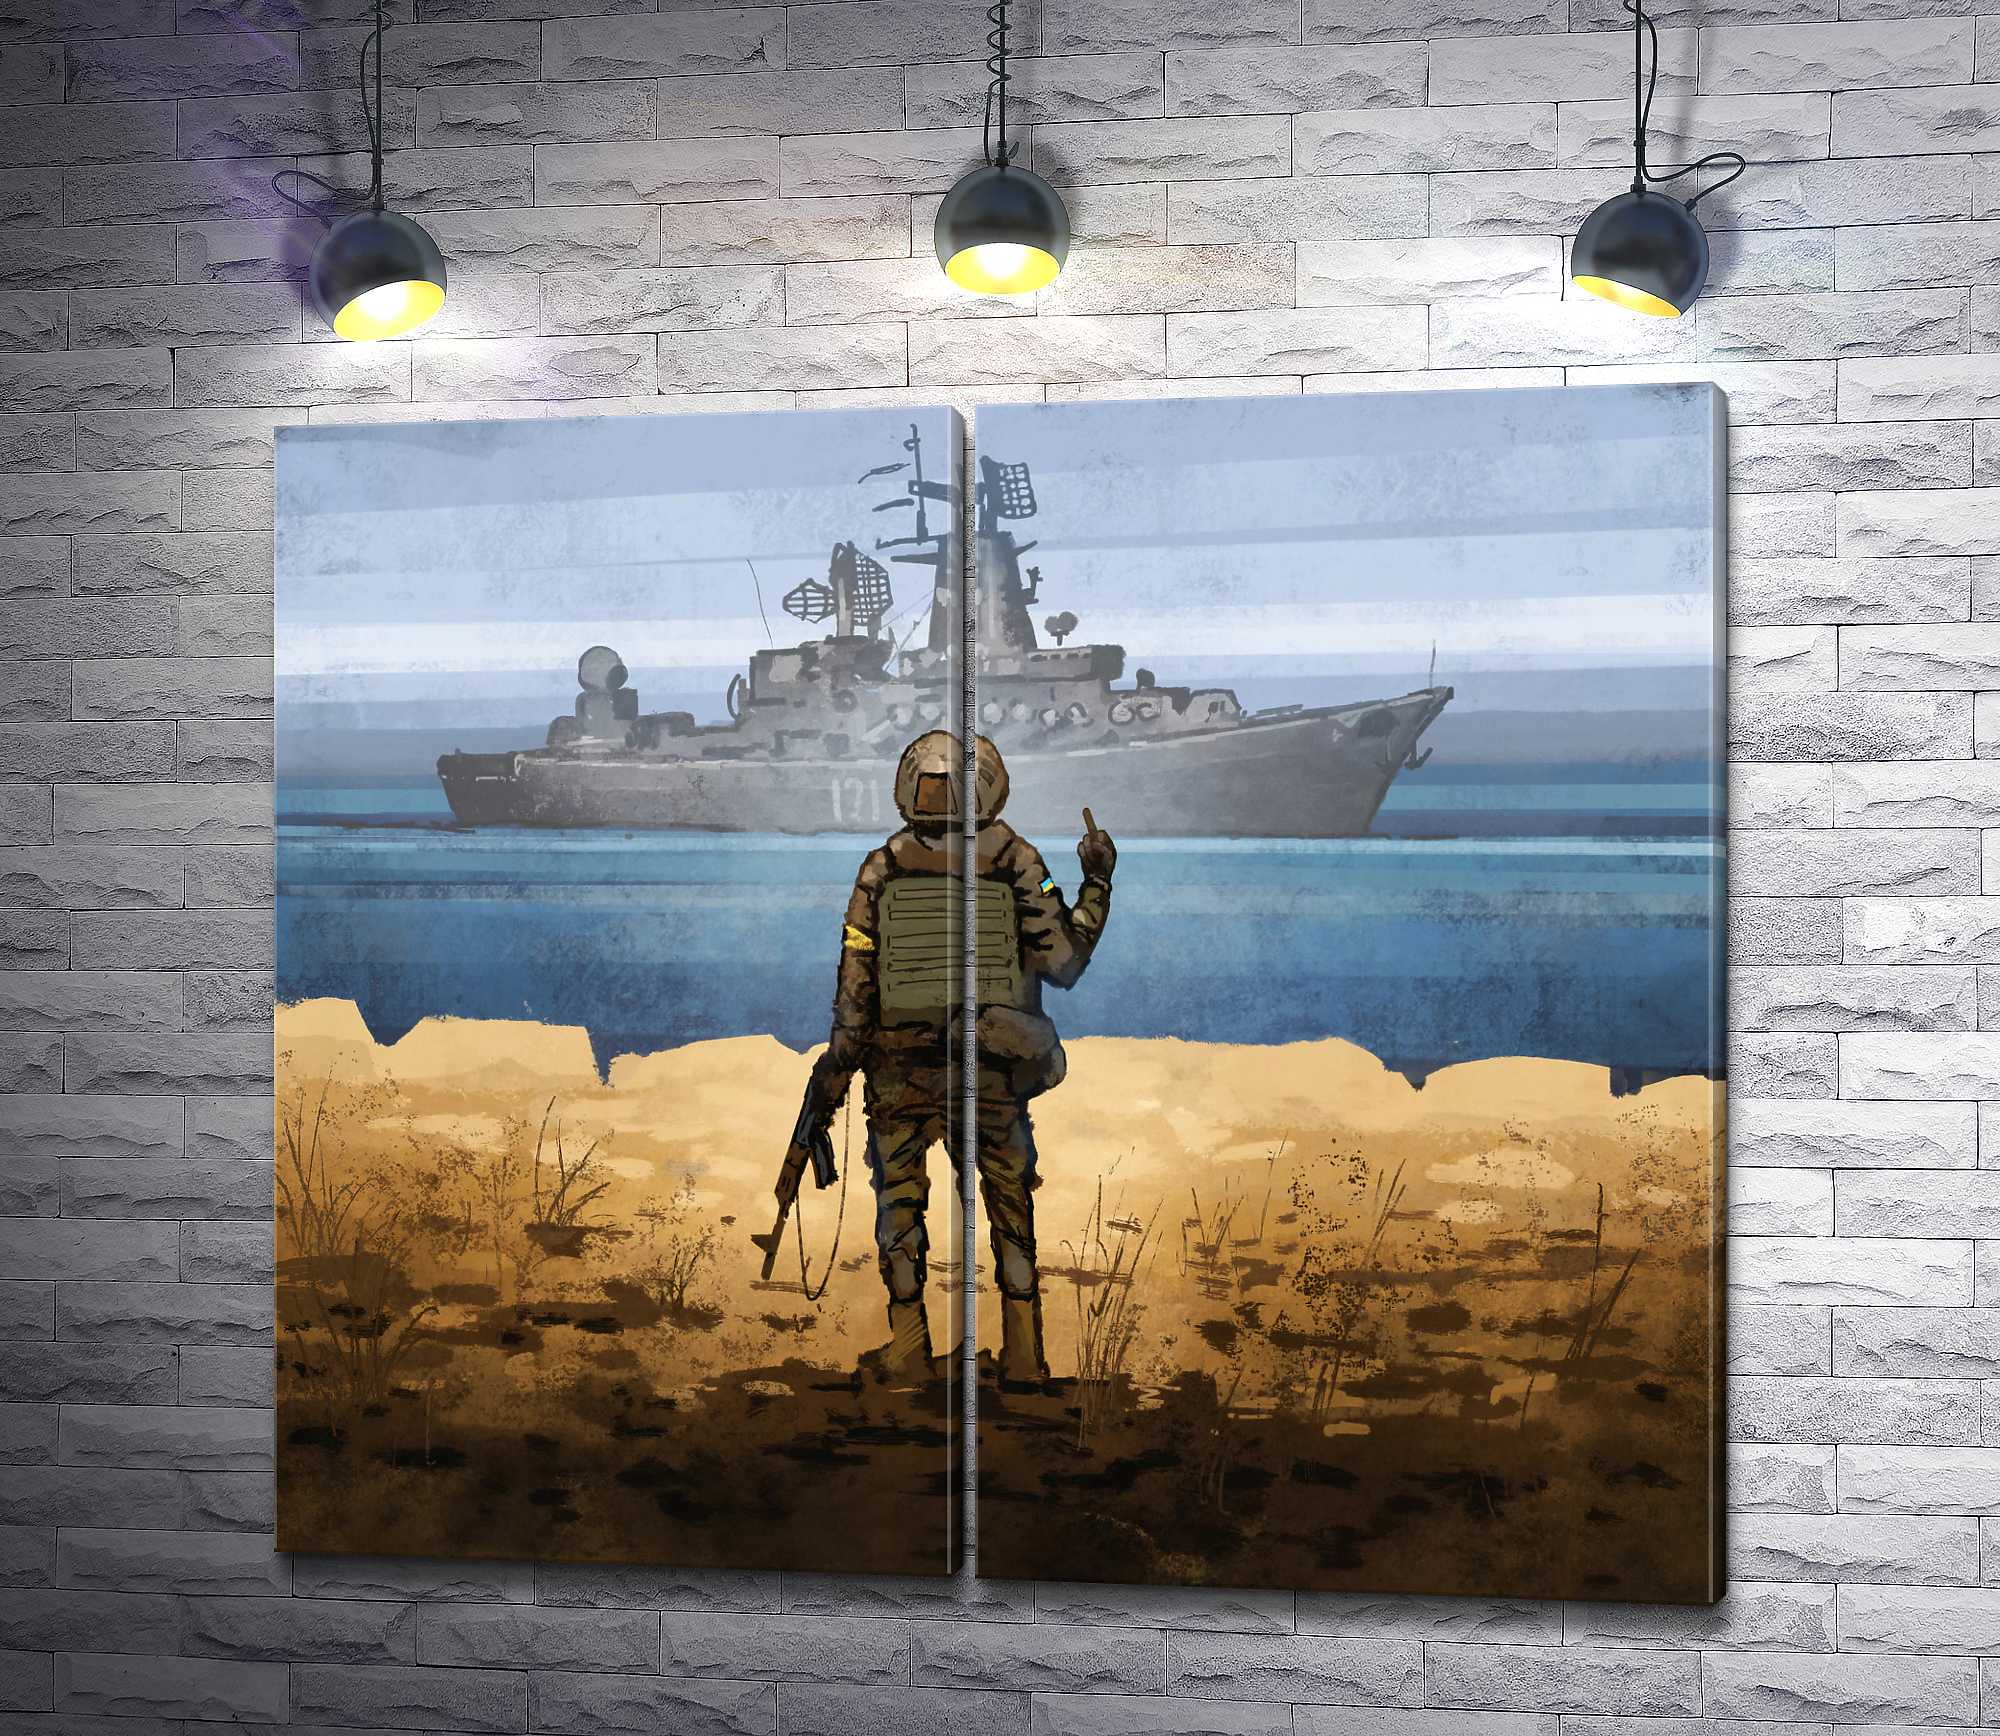 Картина "Руский военный корабль иди на *уй"